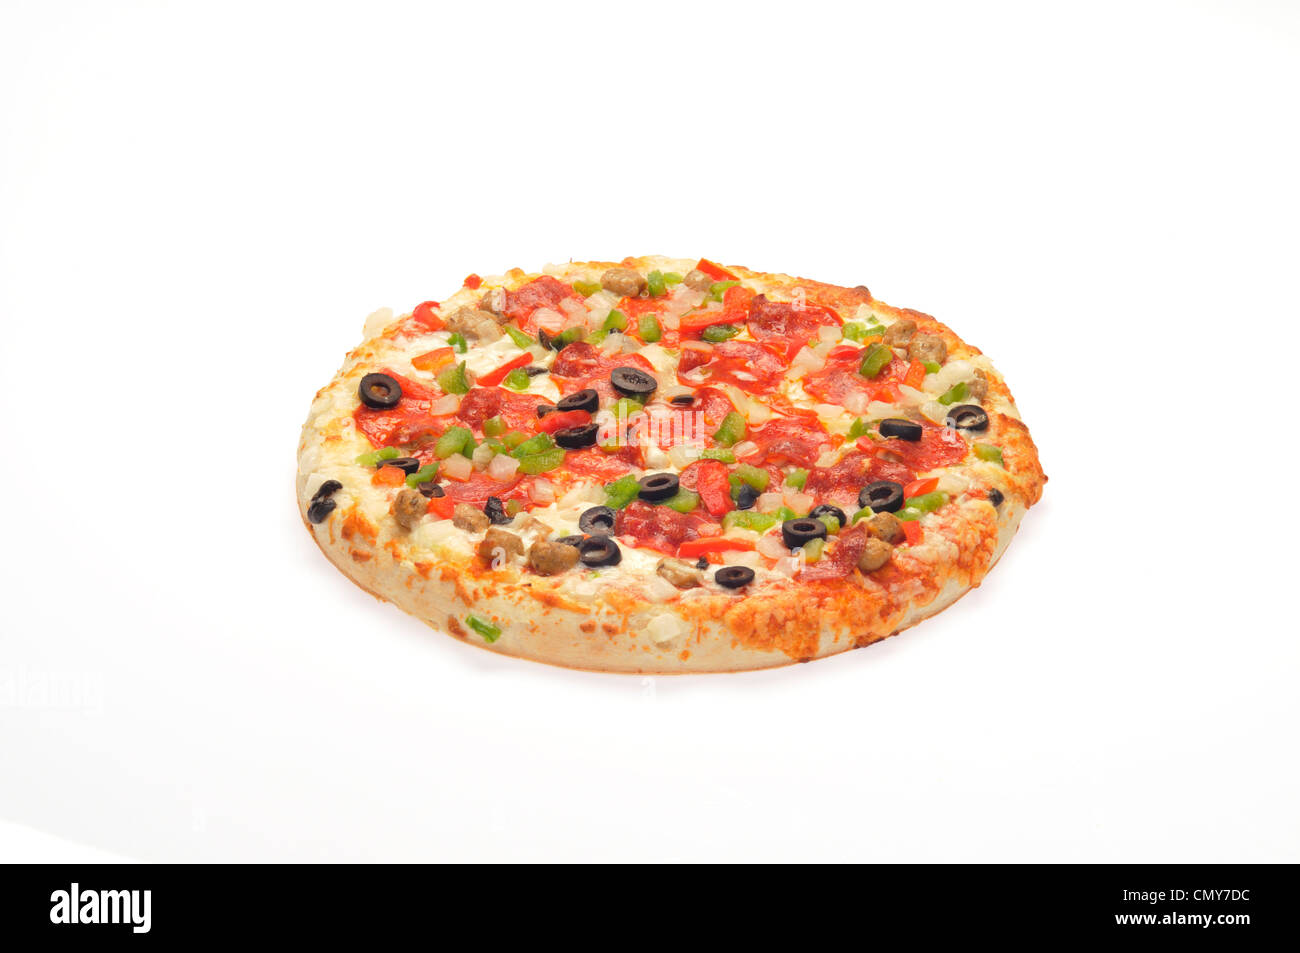 Pizza chaude avec du fromage, pepperoni, saucisses, poivrons rouges et verts, oignons et olives noires Banque D'Images